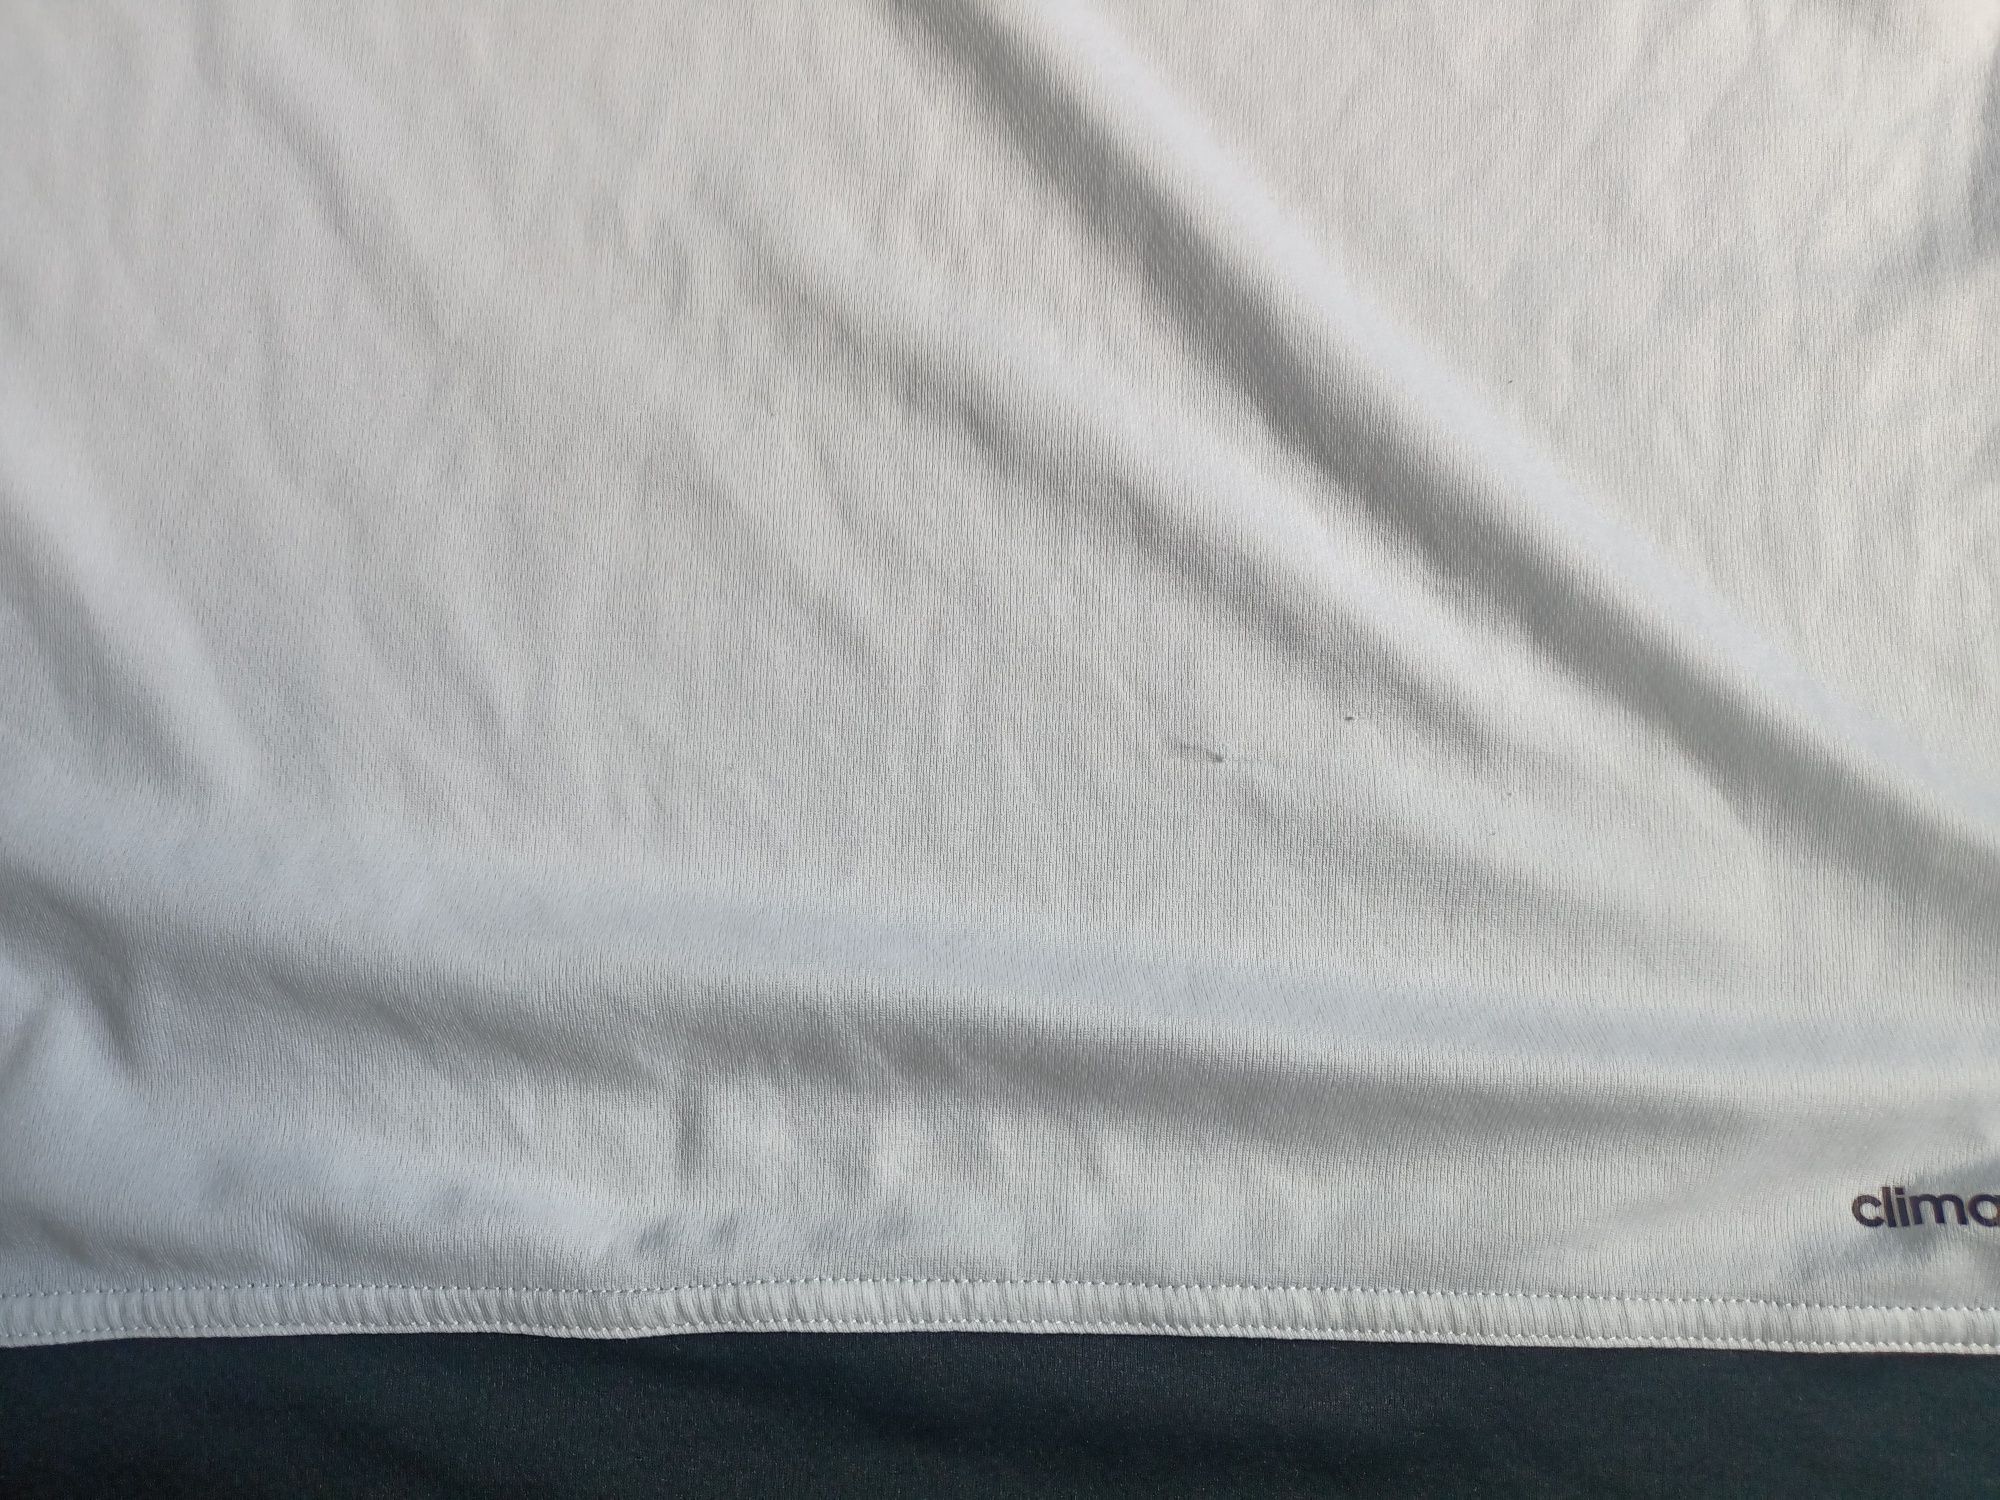 Zestaw koszulek Adidas 40/L biała kurtka wiatrowka big star